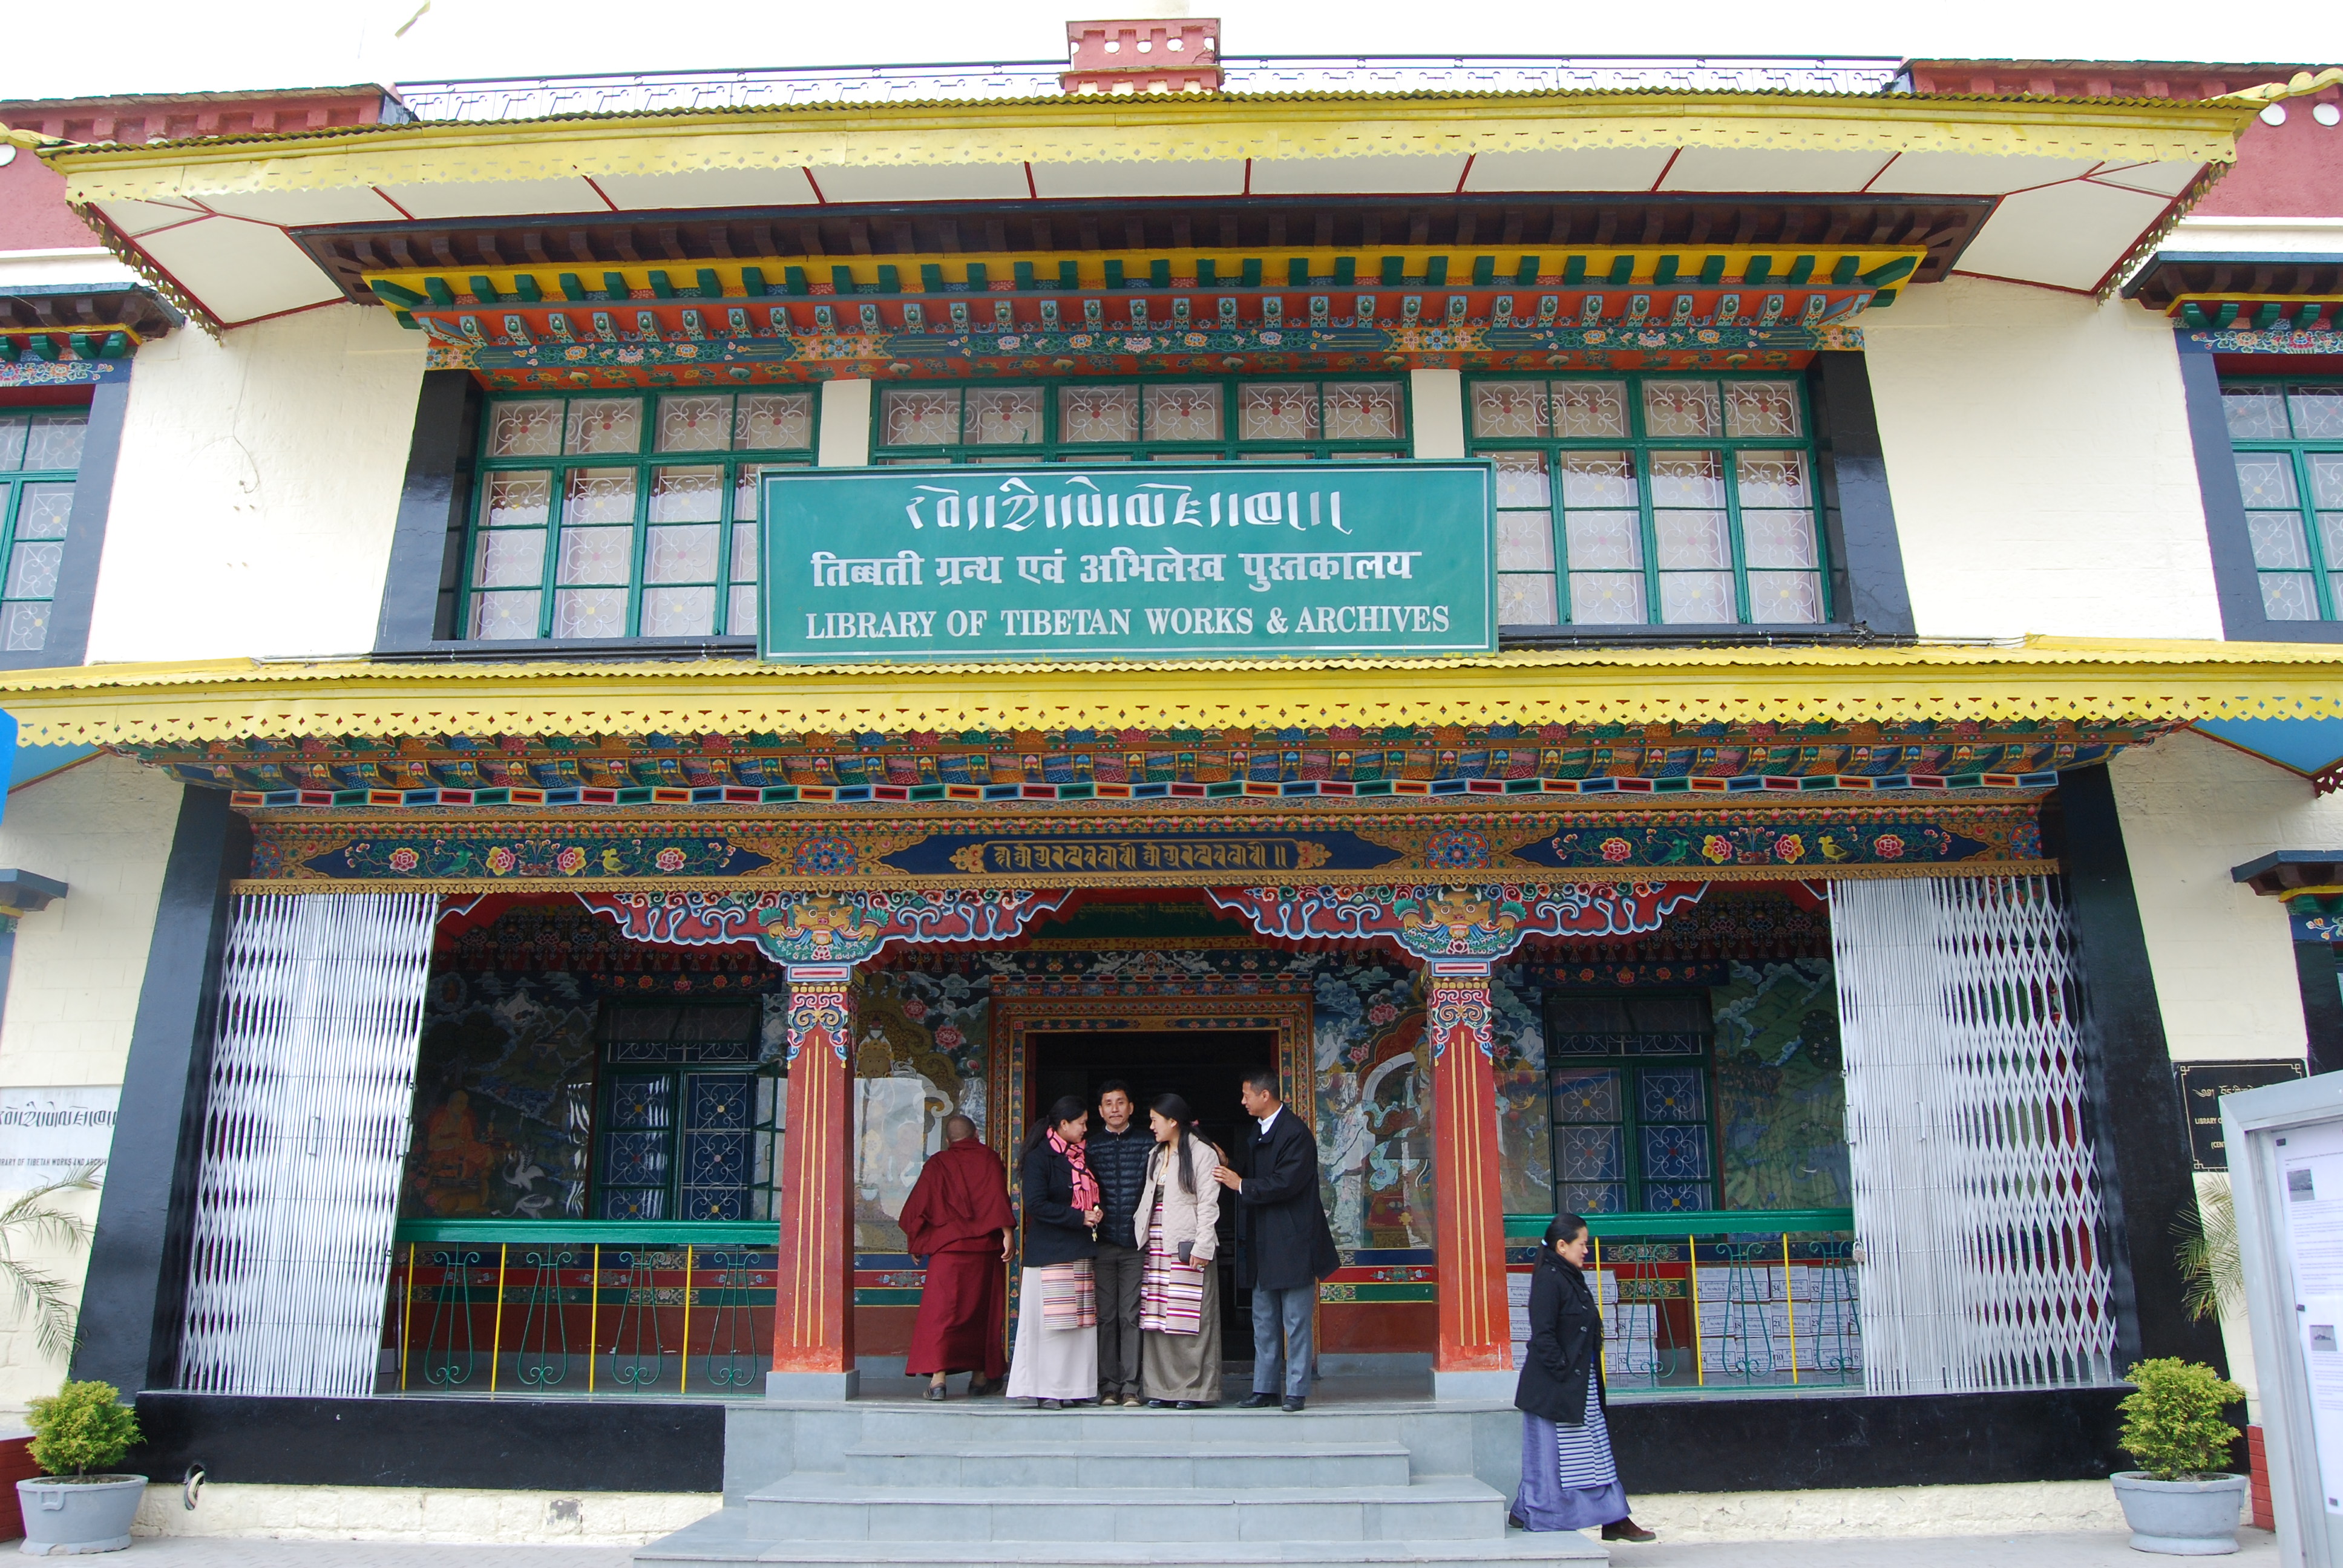 Hotel Snow Crest Inn, McLeod Ganj, Dharamshala McLeod Ganj Library of Tibetan Works and Archives Hotel Snow Crest Inn McLeod Ganj Dharamshala